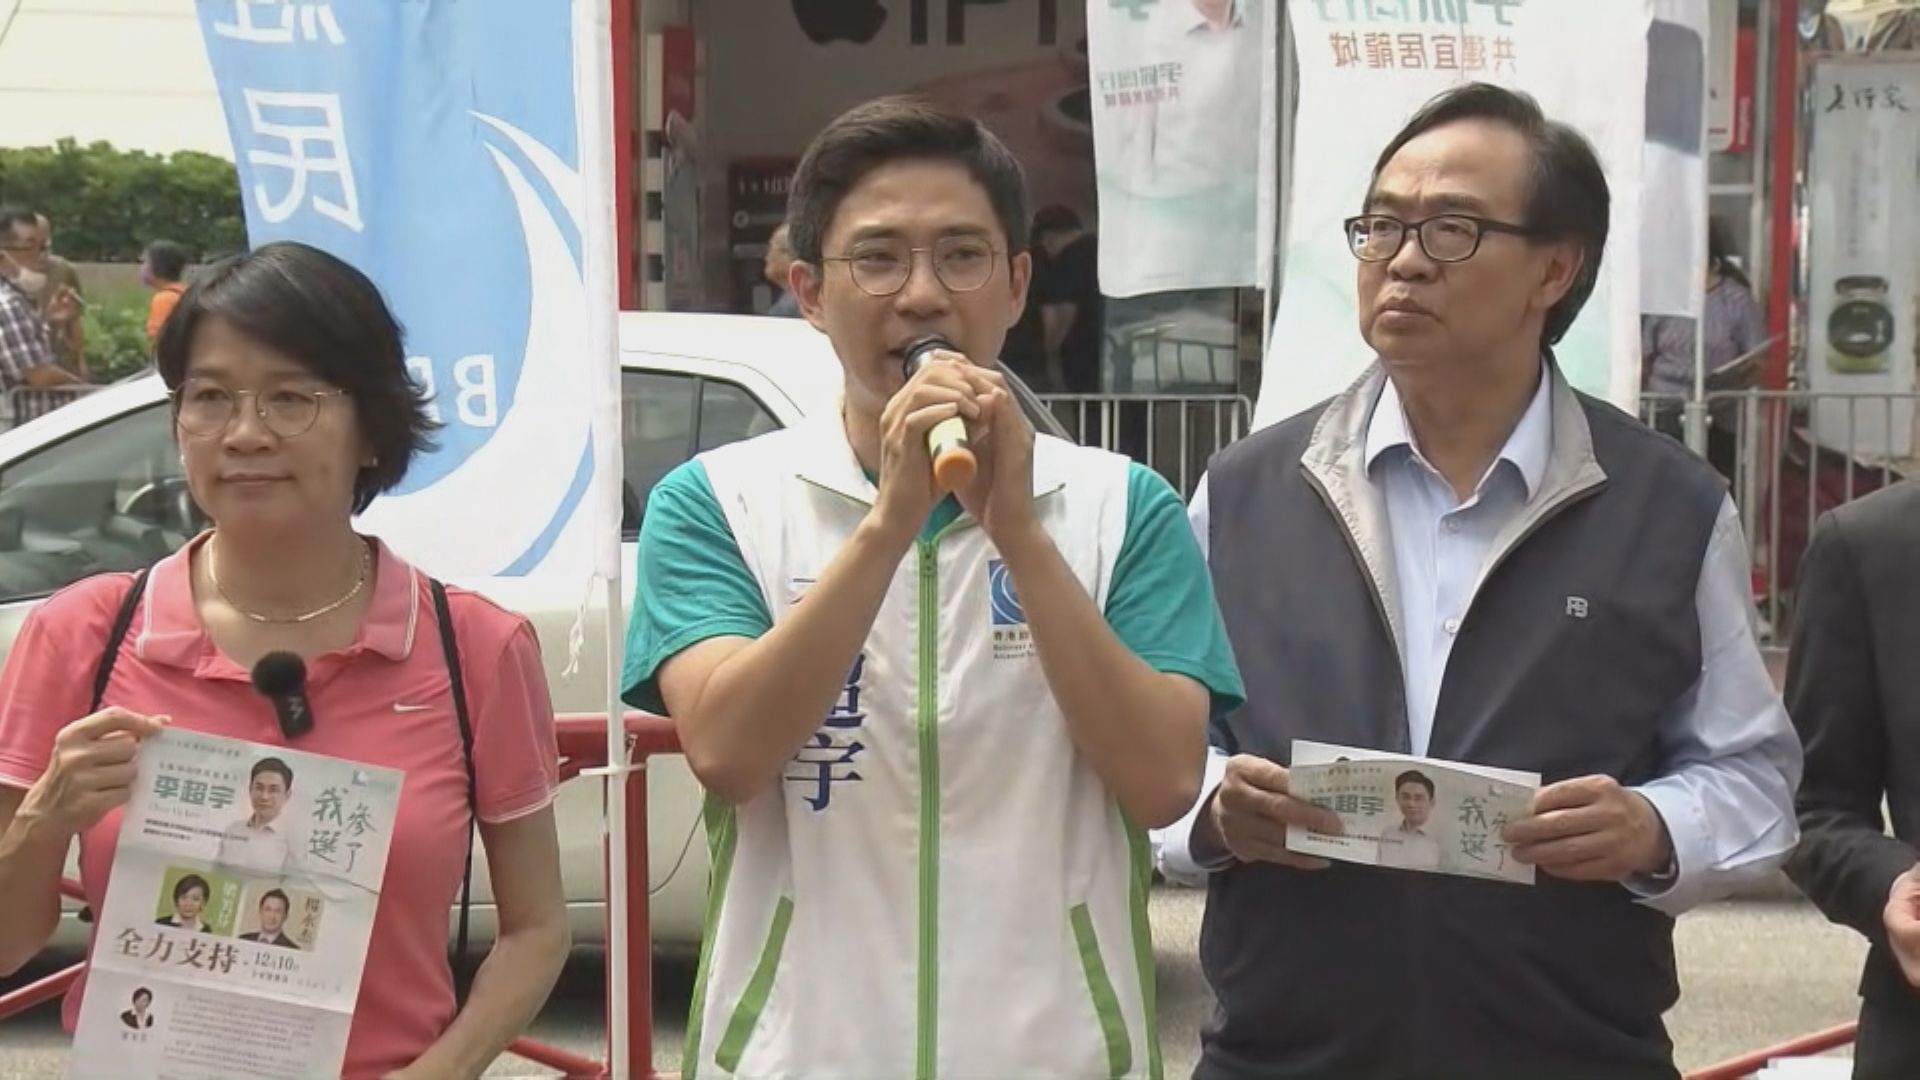 經民聯李超宇宣布參選九龍城南區議會